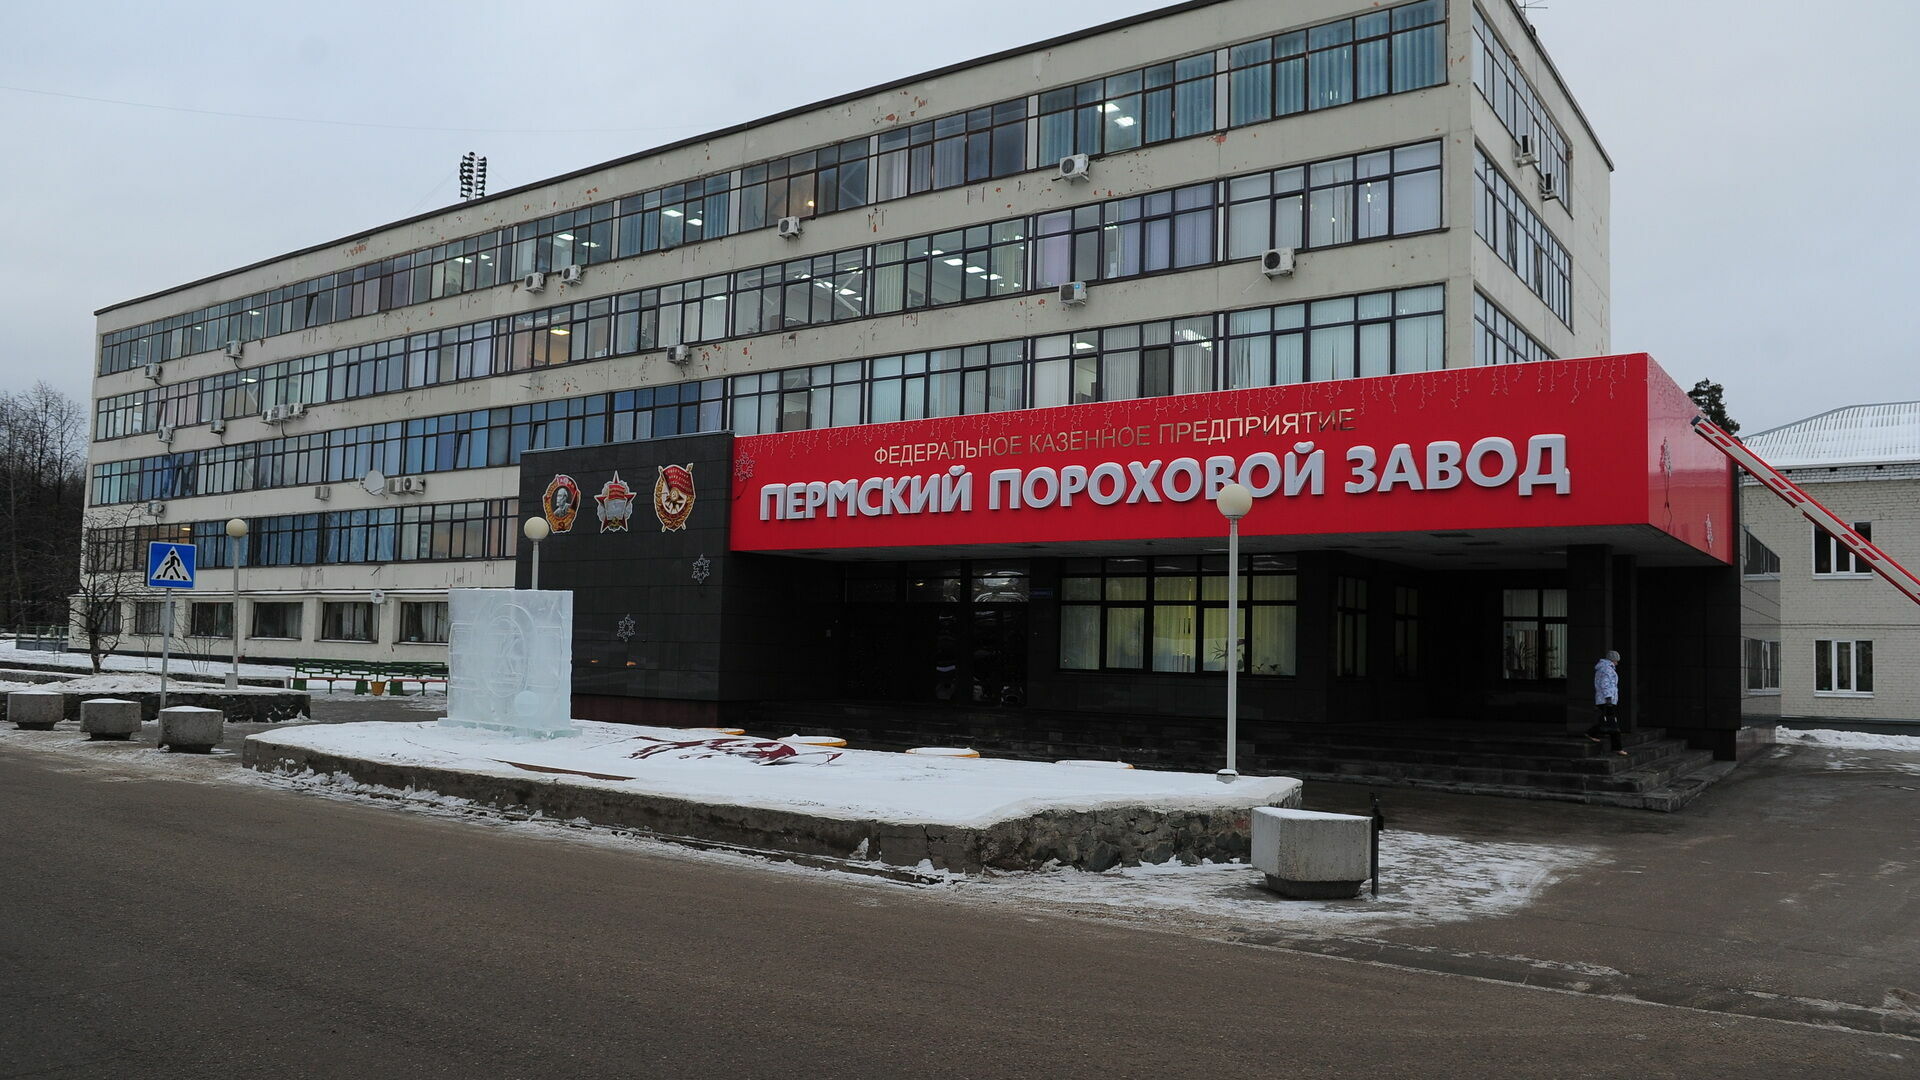 В Москве арестовали фигуранта по делу о хищениях денег на ремонт «Пермского порохового завода»